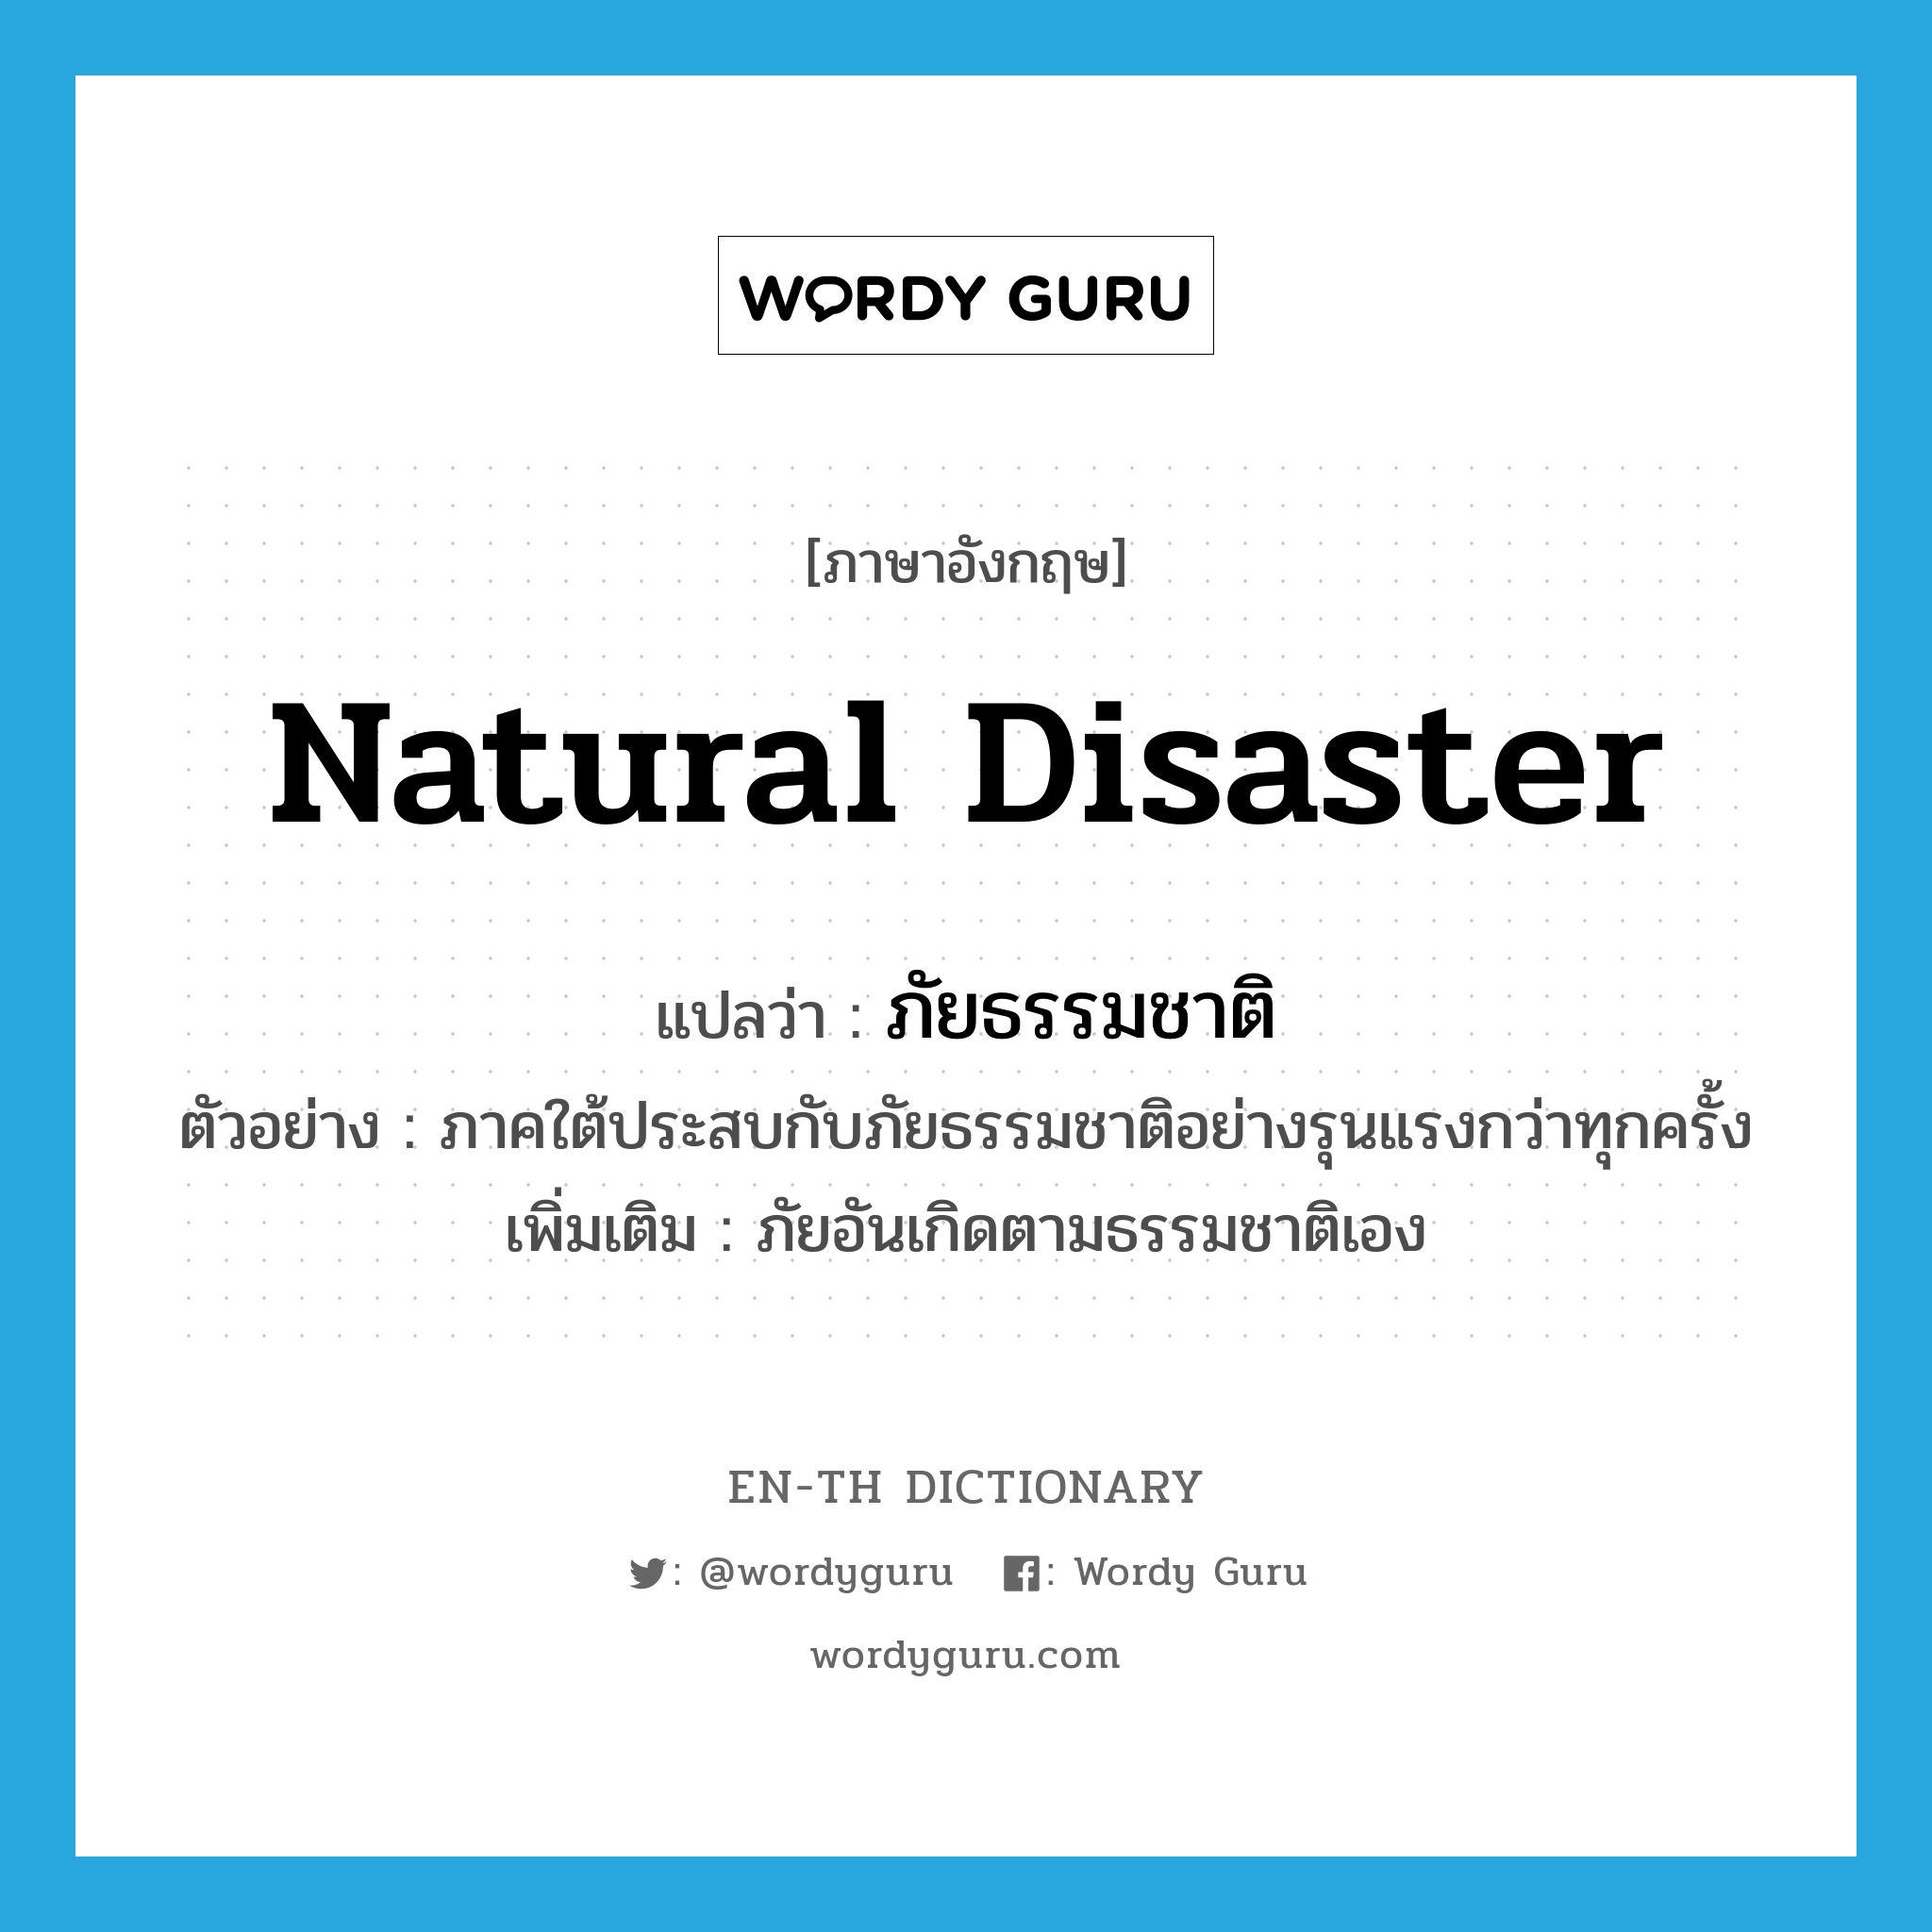 natural disaster แปลว่า?, คำศัพท์ภาษาอังกฤษ natural disaster แปลว่า ภัยธรรมชาติ ประเภท N ตัวอย่าง ภาคใต้ประสบกับภัยธรรมชาติอย่างรุนแรงกว่าทุกครั้ง เพิ่มเติม ภัยอันเกิดตามธรรมชาติเอง หมวด N